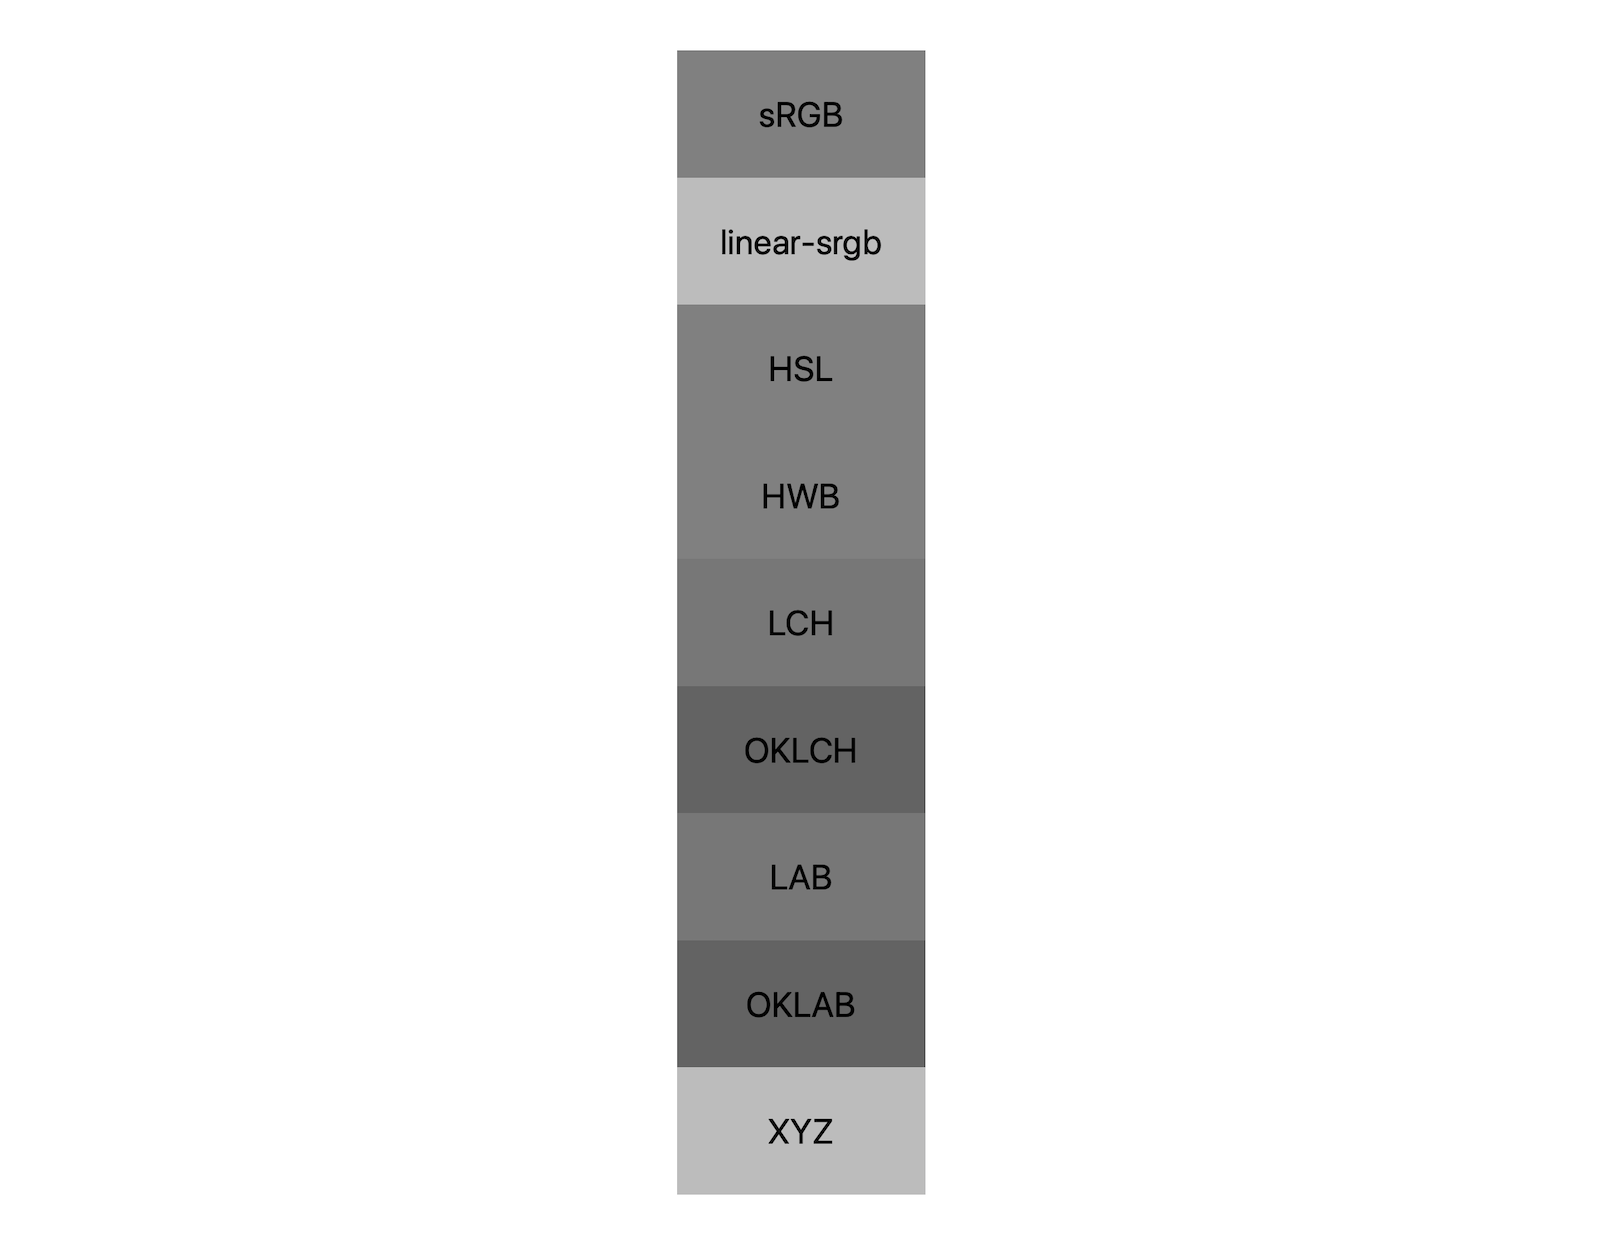 7 مساحات ألوان (srgb وsrgb وlch وoklch و Lab وoklab وxyz) تعرض كل منها نتائج خلط الأبيض والأسود للّونين الأسود والأبيض. يتم عرض ما يقرب من 5 ظلال مختلفة، مما يوضح أن كل مساحة لون ستختلط إلى اللون الرمادي بشكل مختلف.